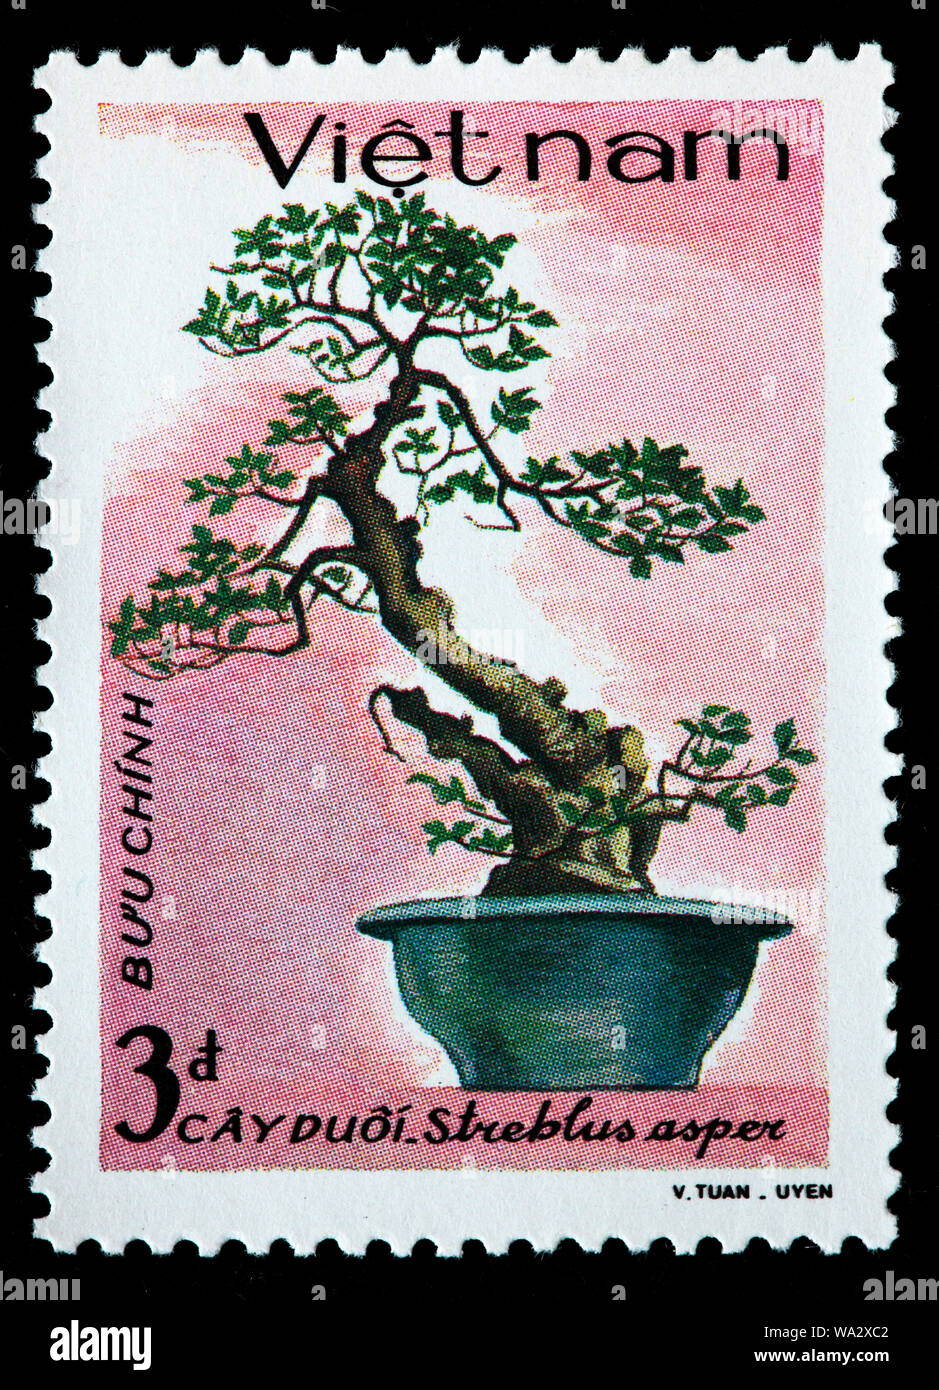 Streblus asper, Siamois bois, khoi, serut, brosse à dents arbre, bonsaï, timbre-poste, Vietnam, 1986 Banque D'Images